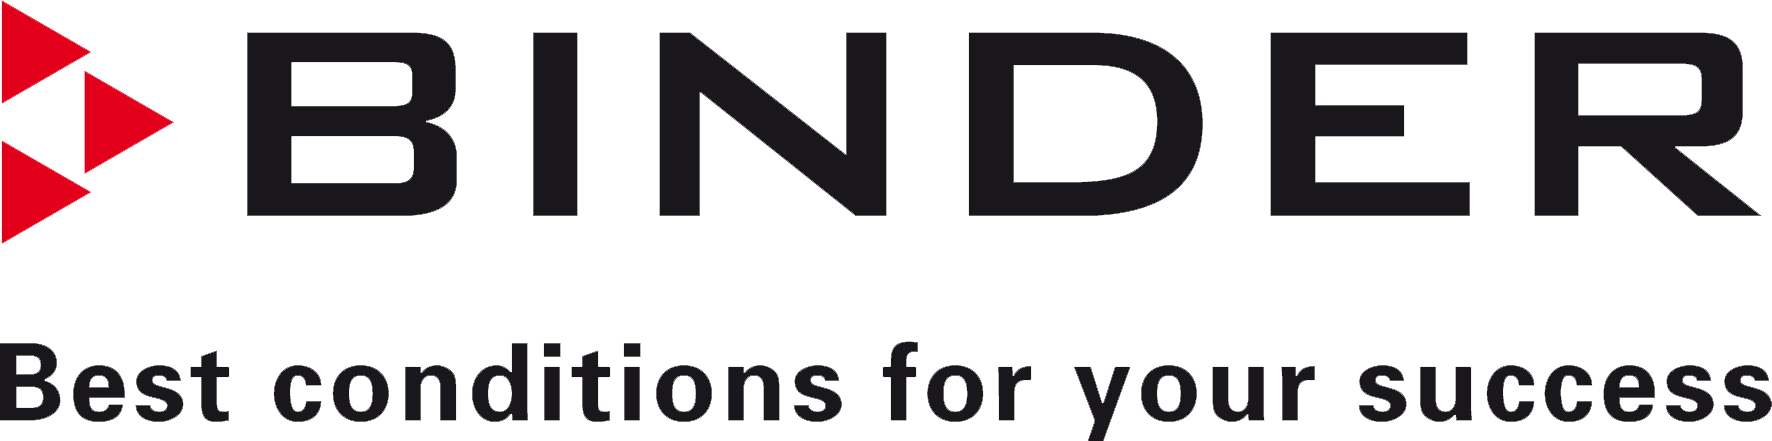 Binder is de partner van Technex.